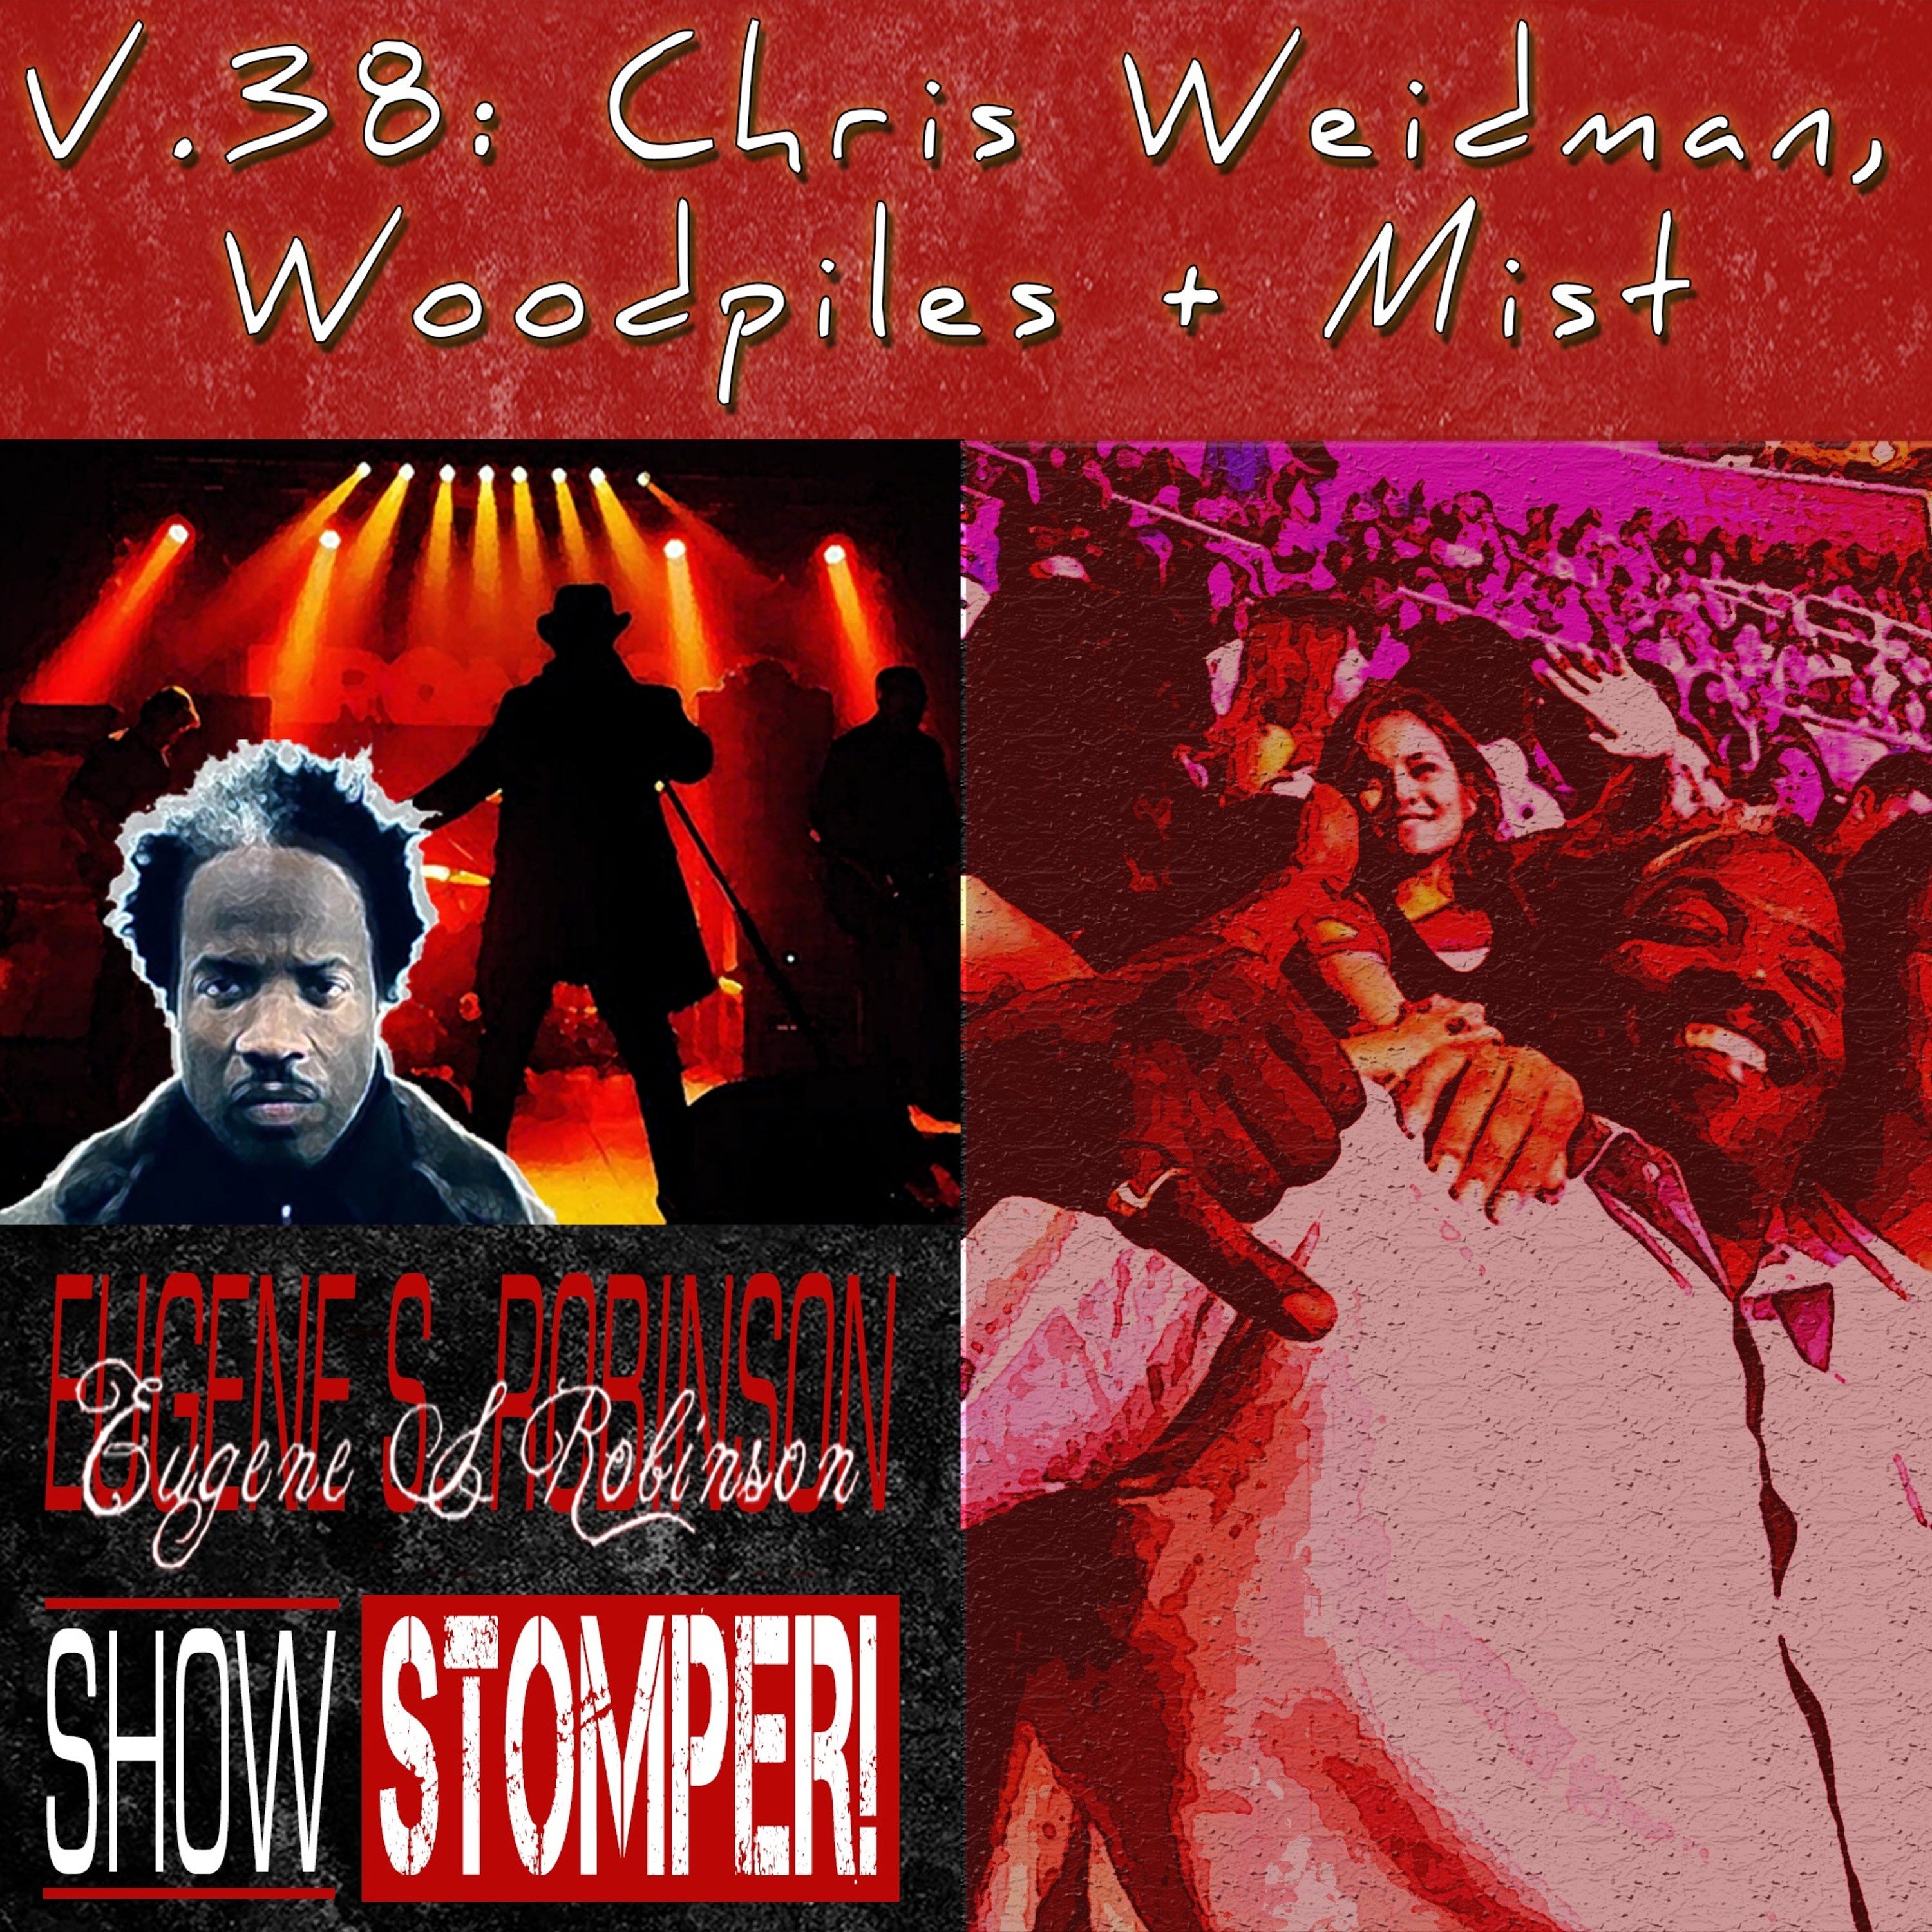 The Eugene S. Robinson Show Stomper! V.38 - Chris Weidman, Woodpiles + Mist